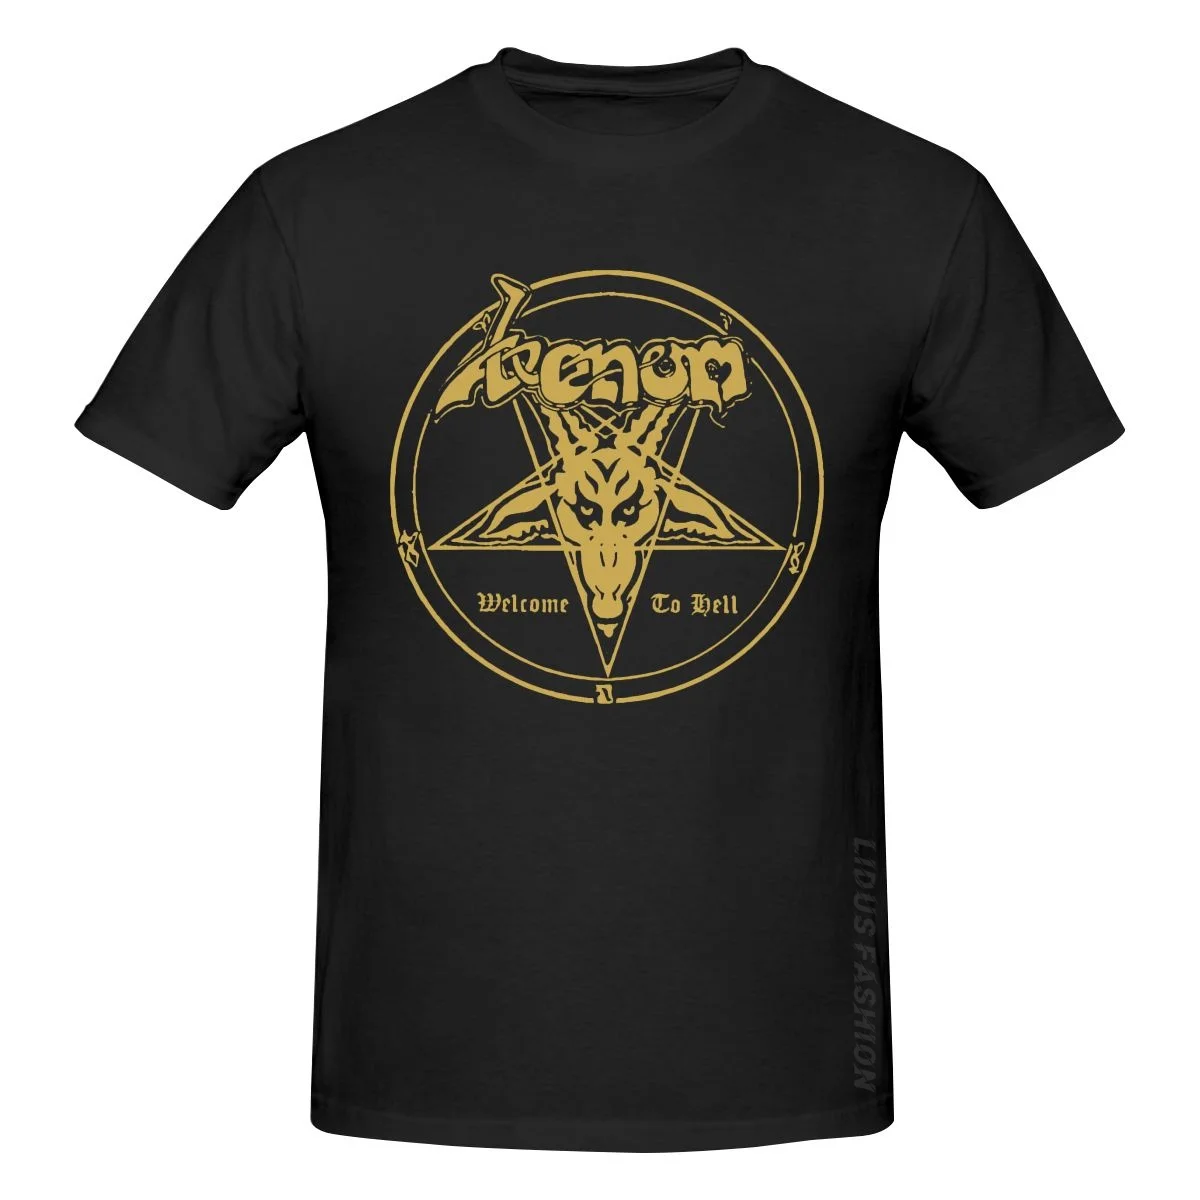 

Металлическая Футболка VENOM с логотипом альбома Добро пожаловать в ад, одежда, графическая футболка, свитшот с коротким рукавом, футболка